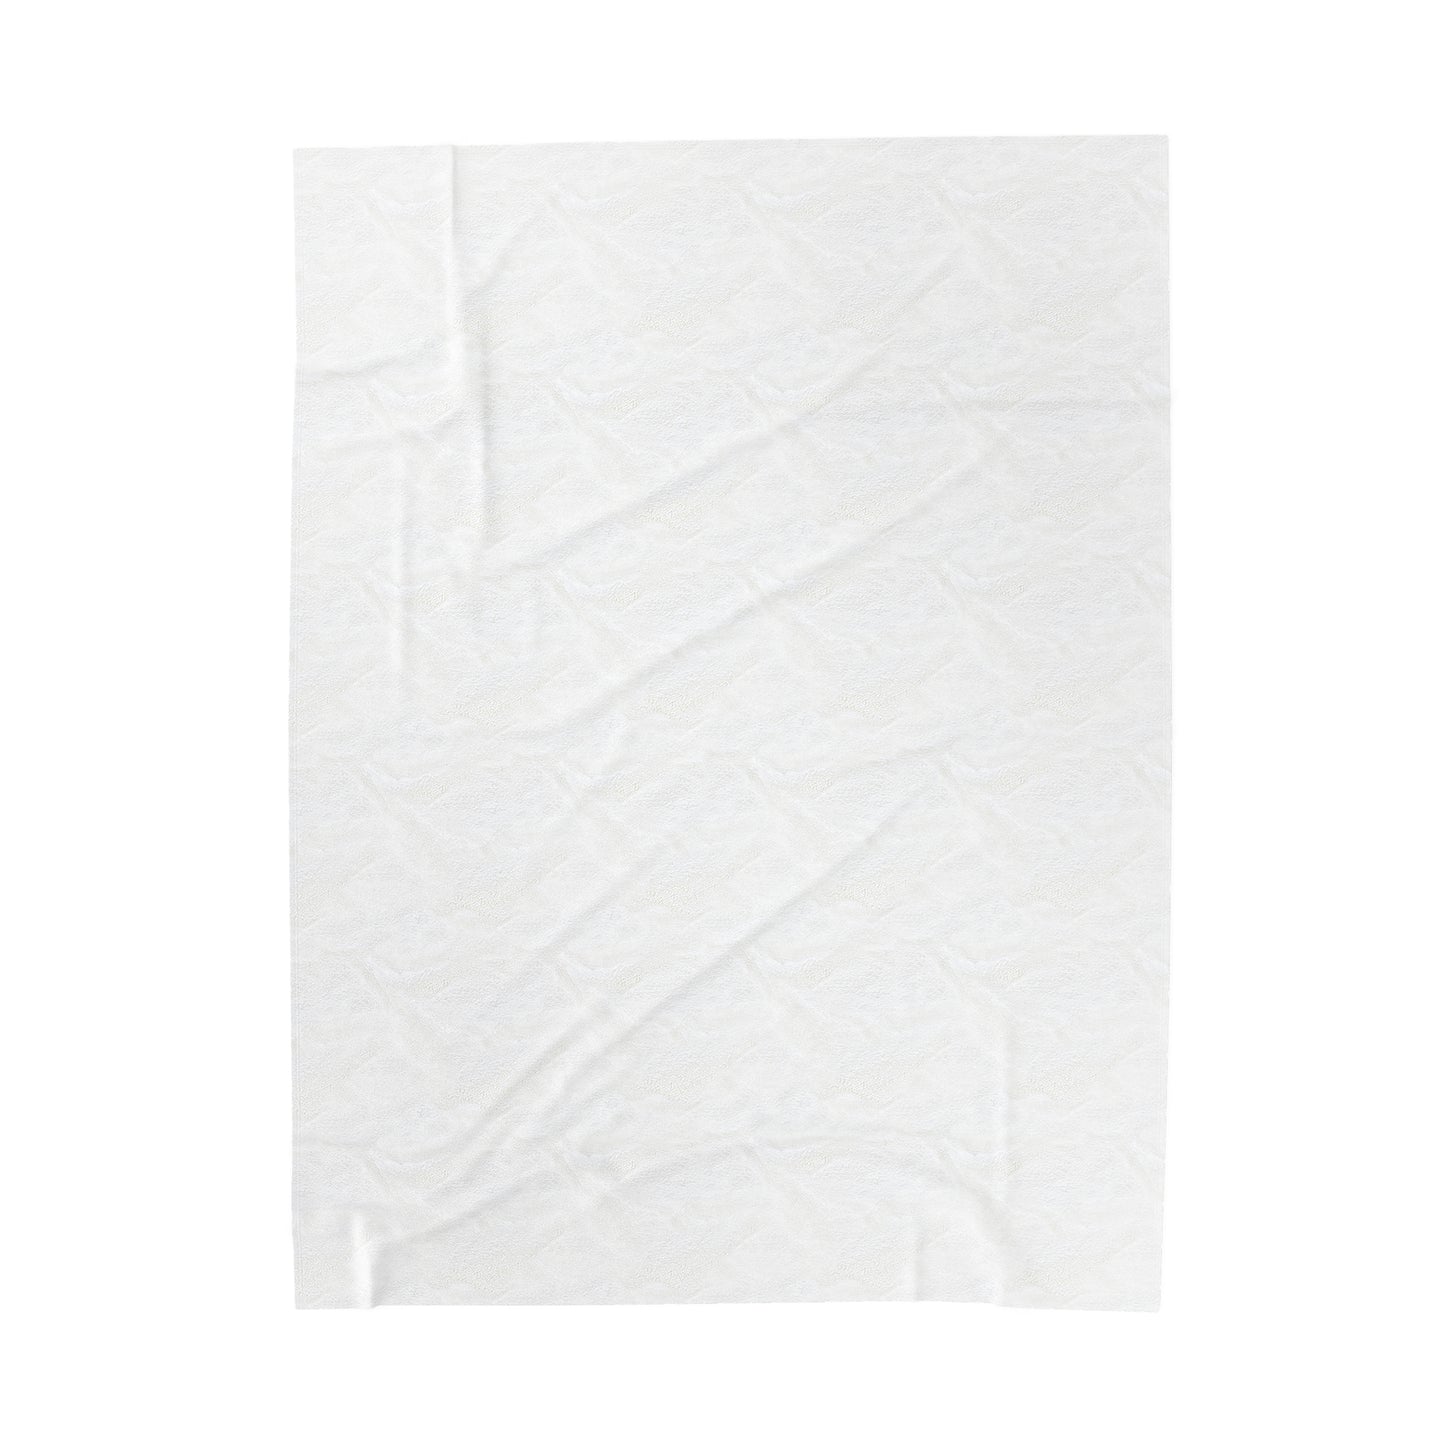 941’s finest Plush Blanket (solid color design)